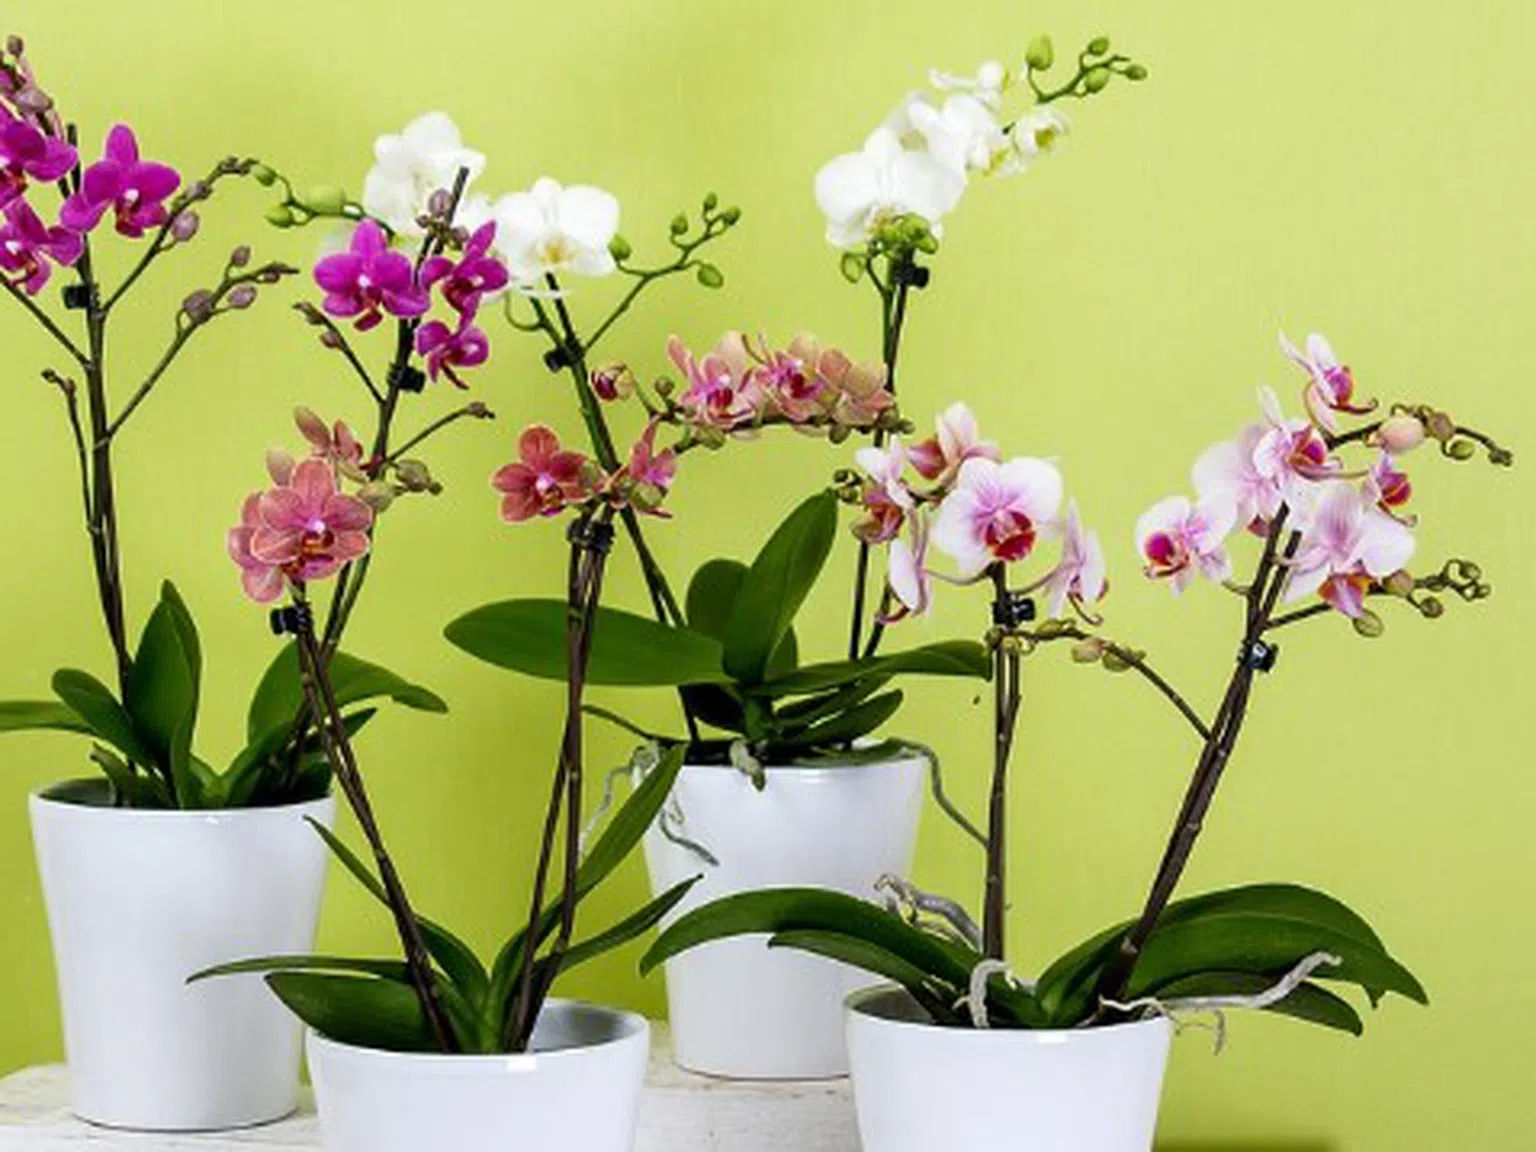 Ако искате орхидеята да цъфти всяка година, направете това